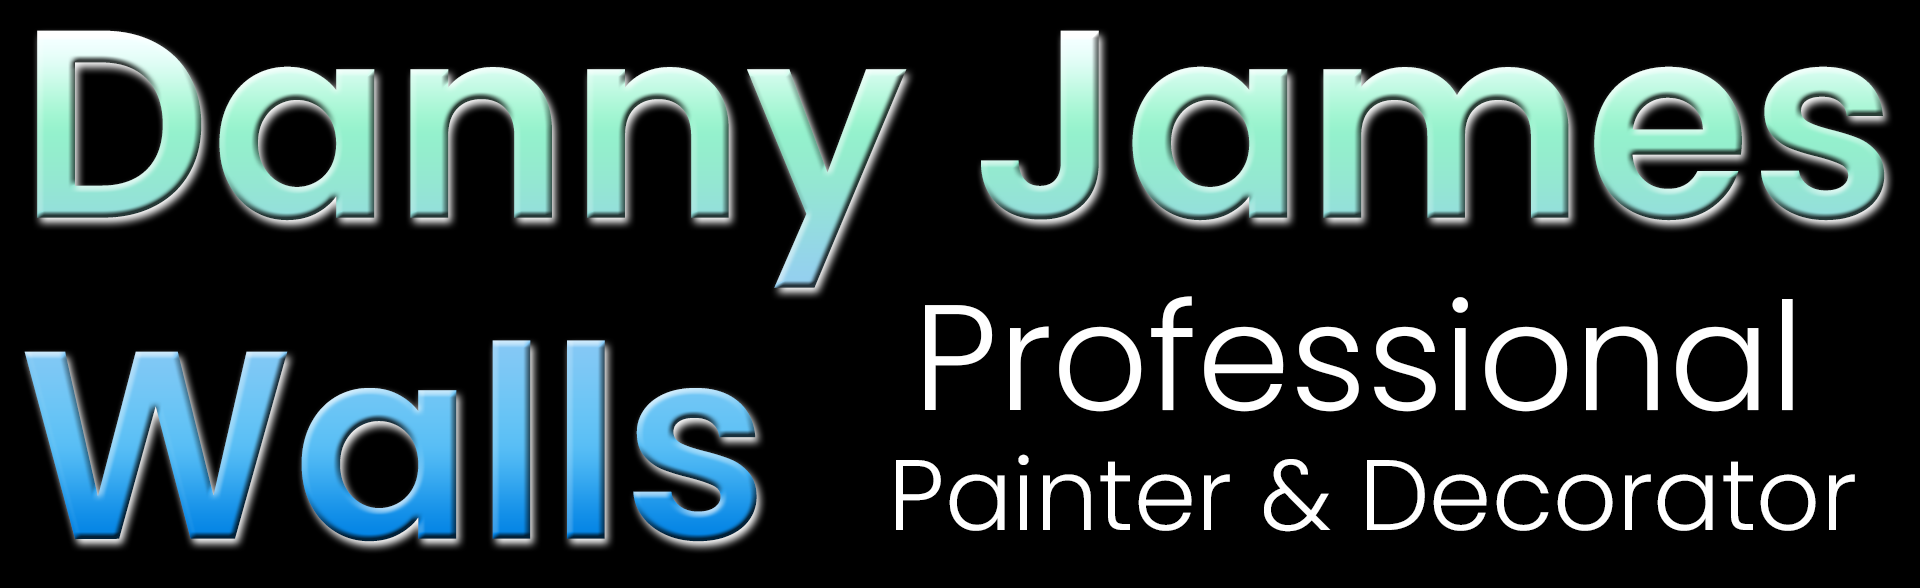 Danny James Walls – Painter